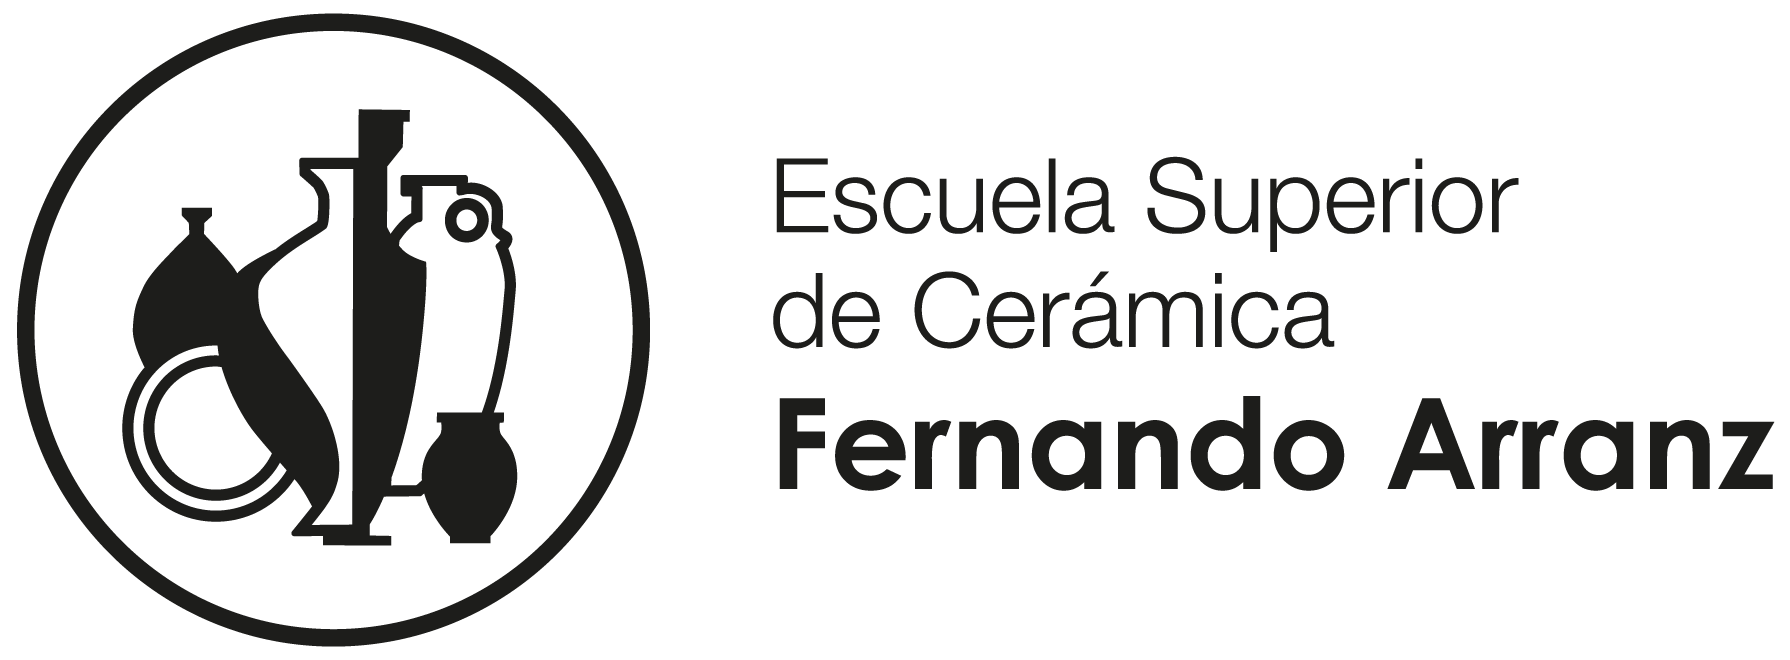 Escuela Superior de Cerámica Fernando Arranz